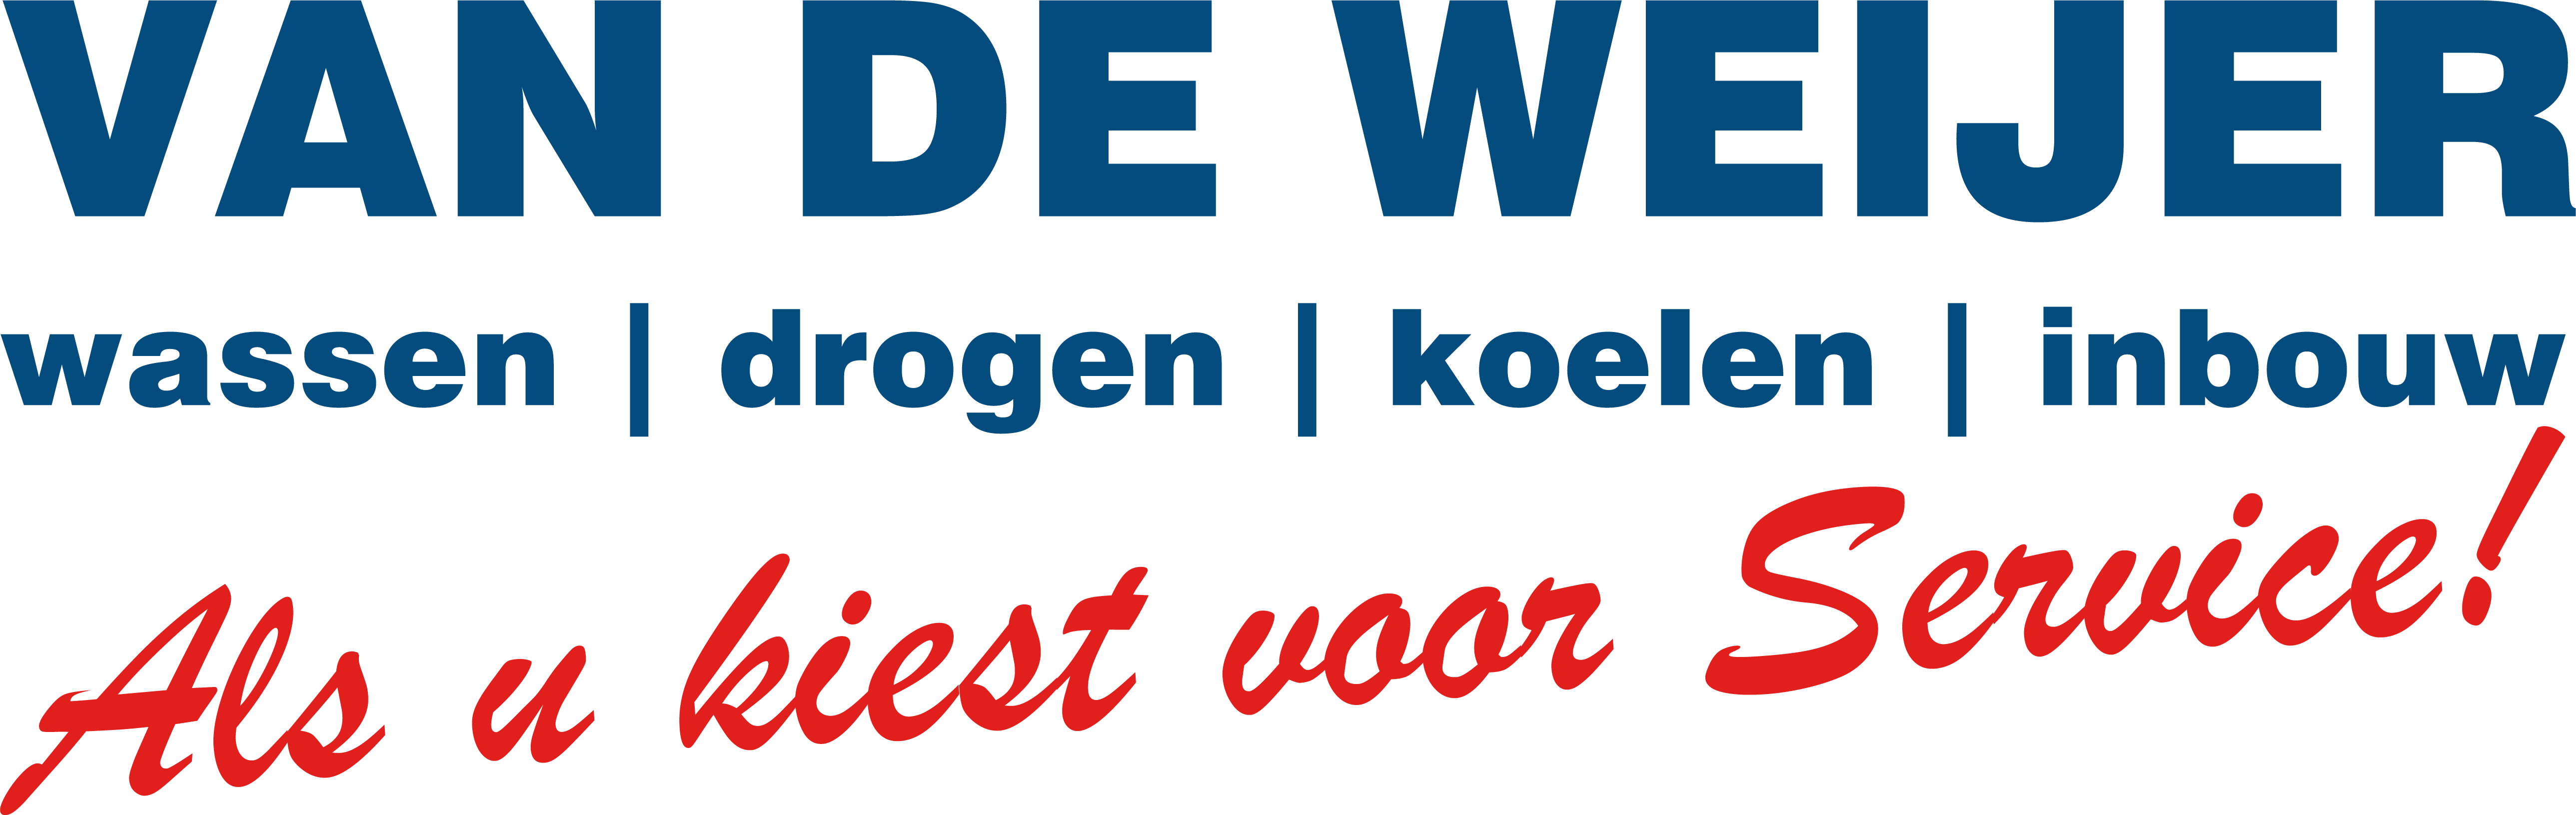 VanDeWeijershop.nl